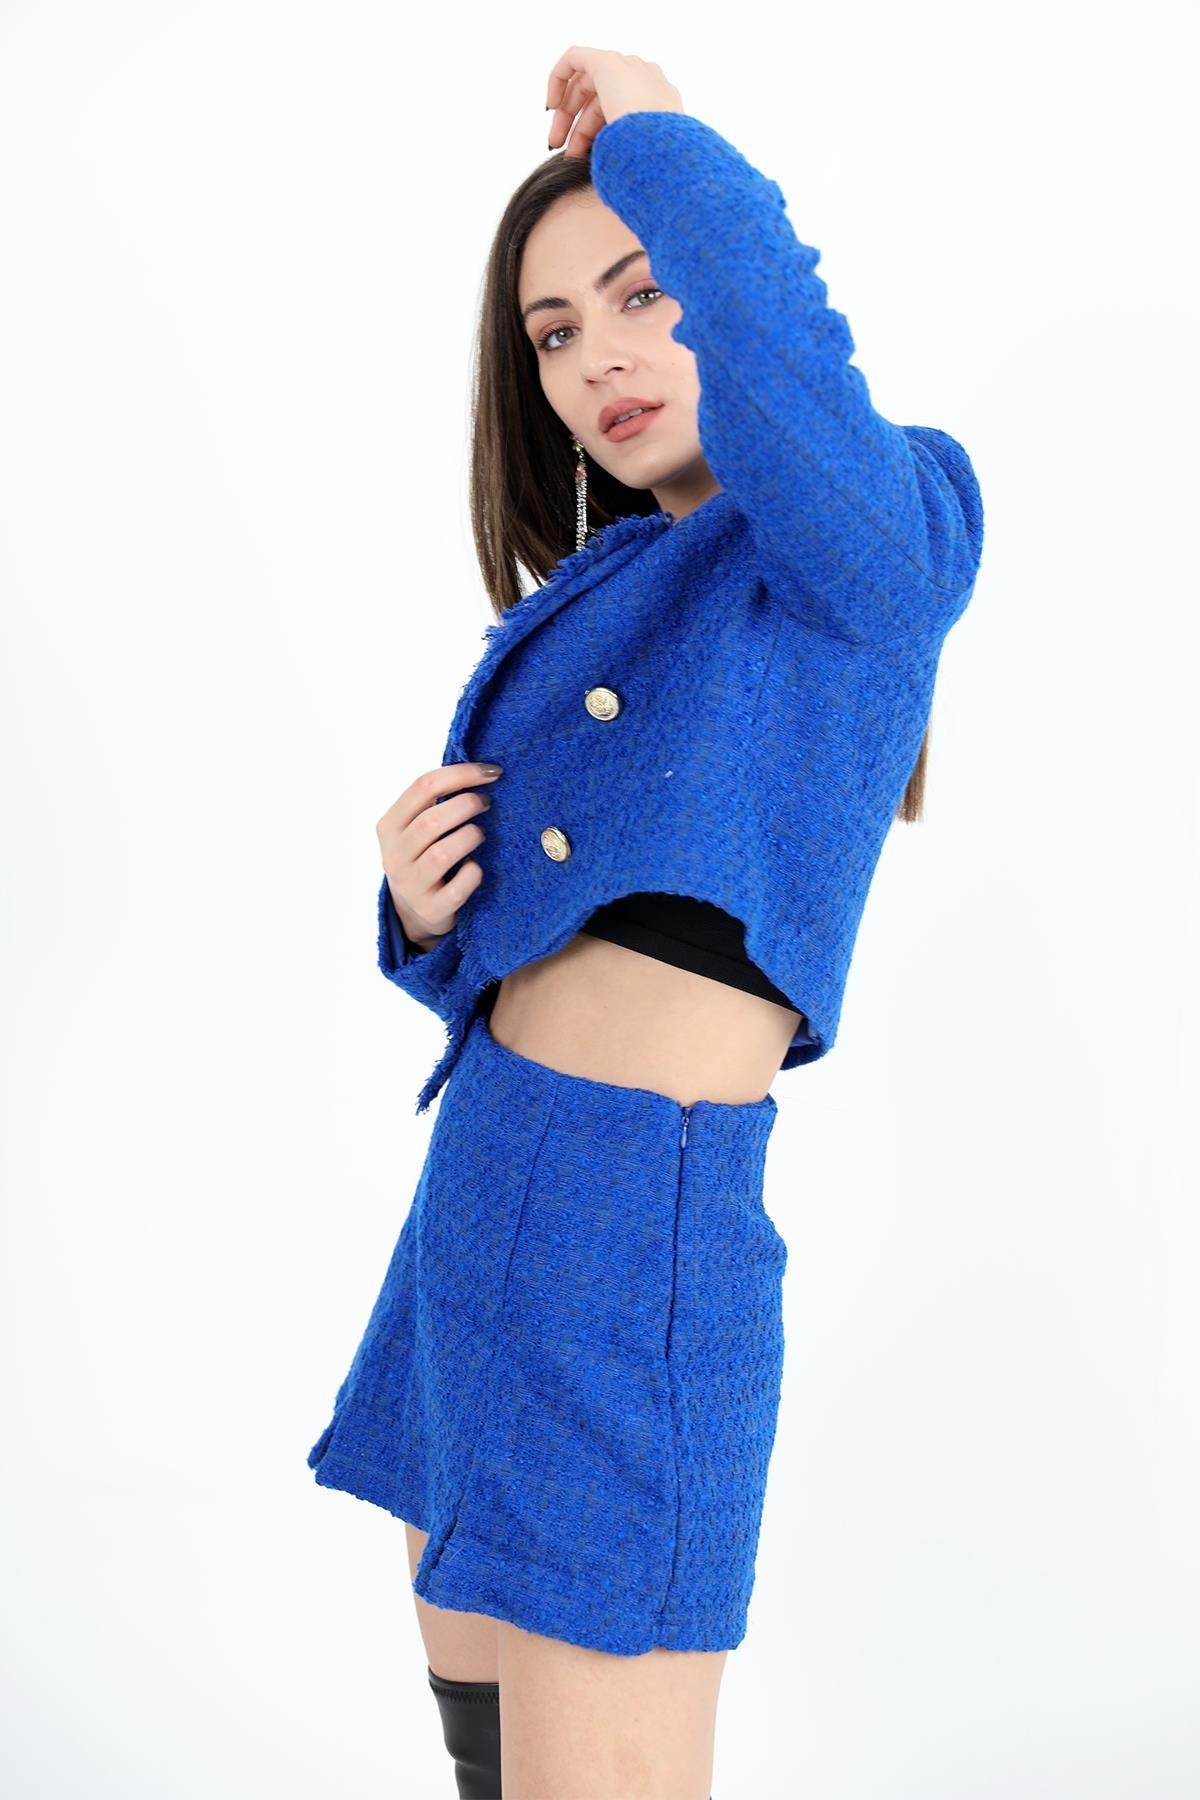 Women's High Waist Side Zipper Chanel Fabric Short Skirt - Sax Blue - STREETMODE™